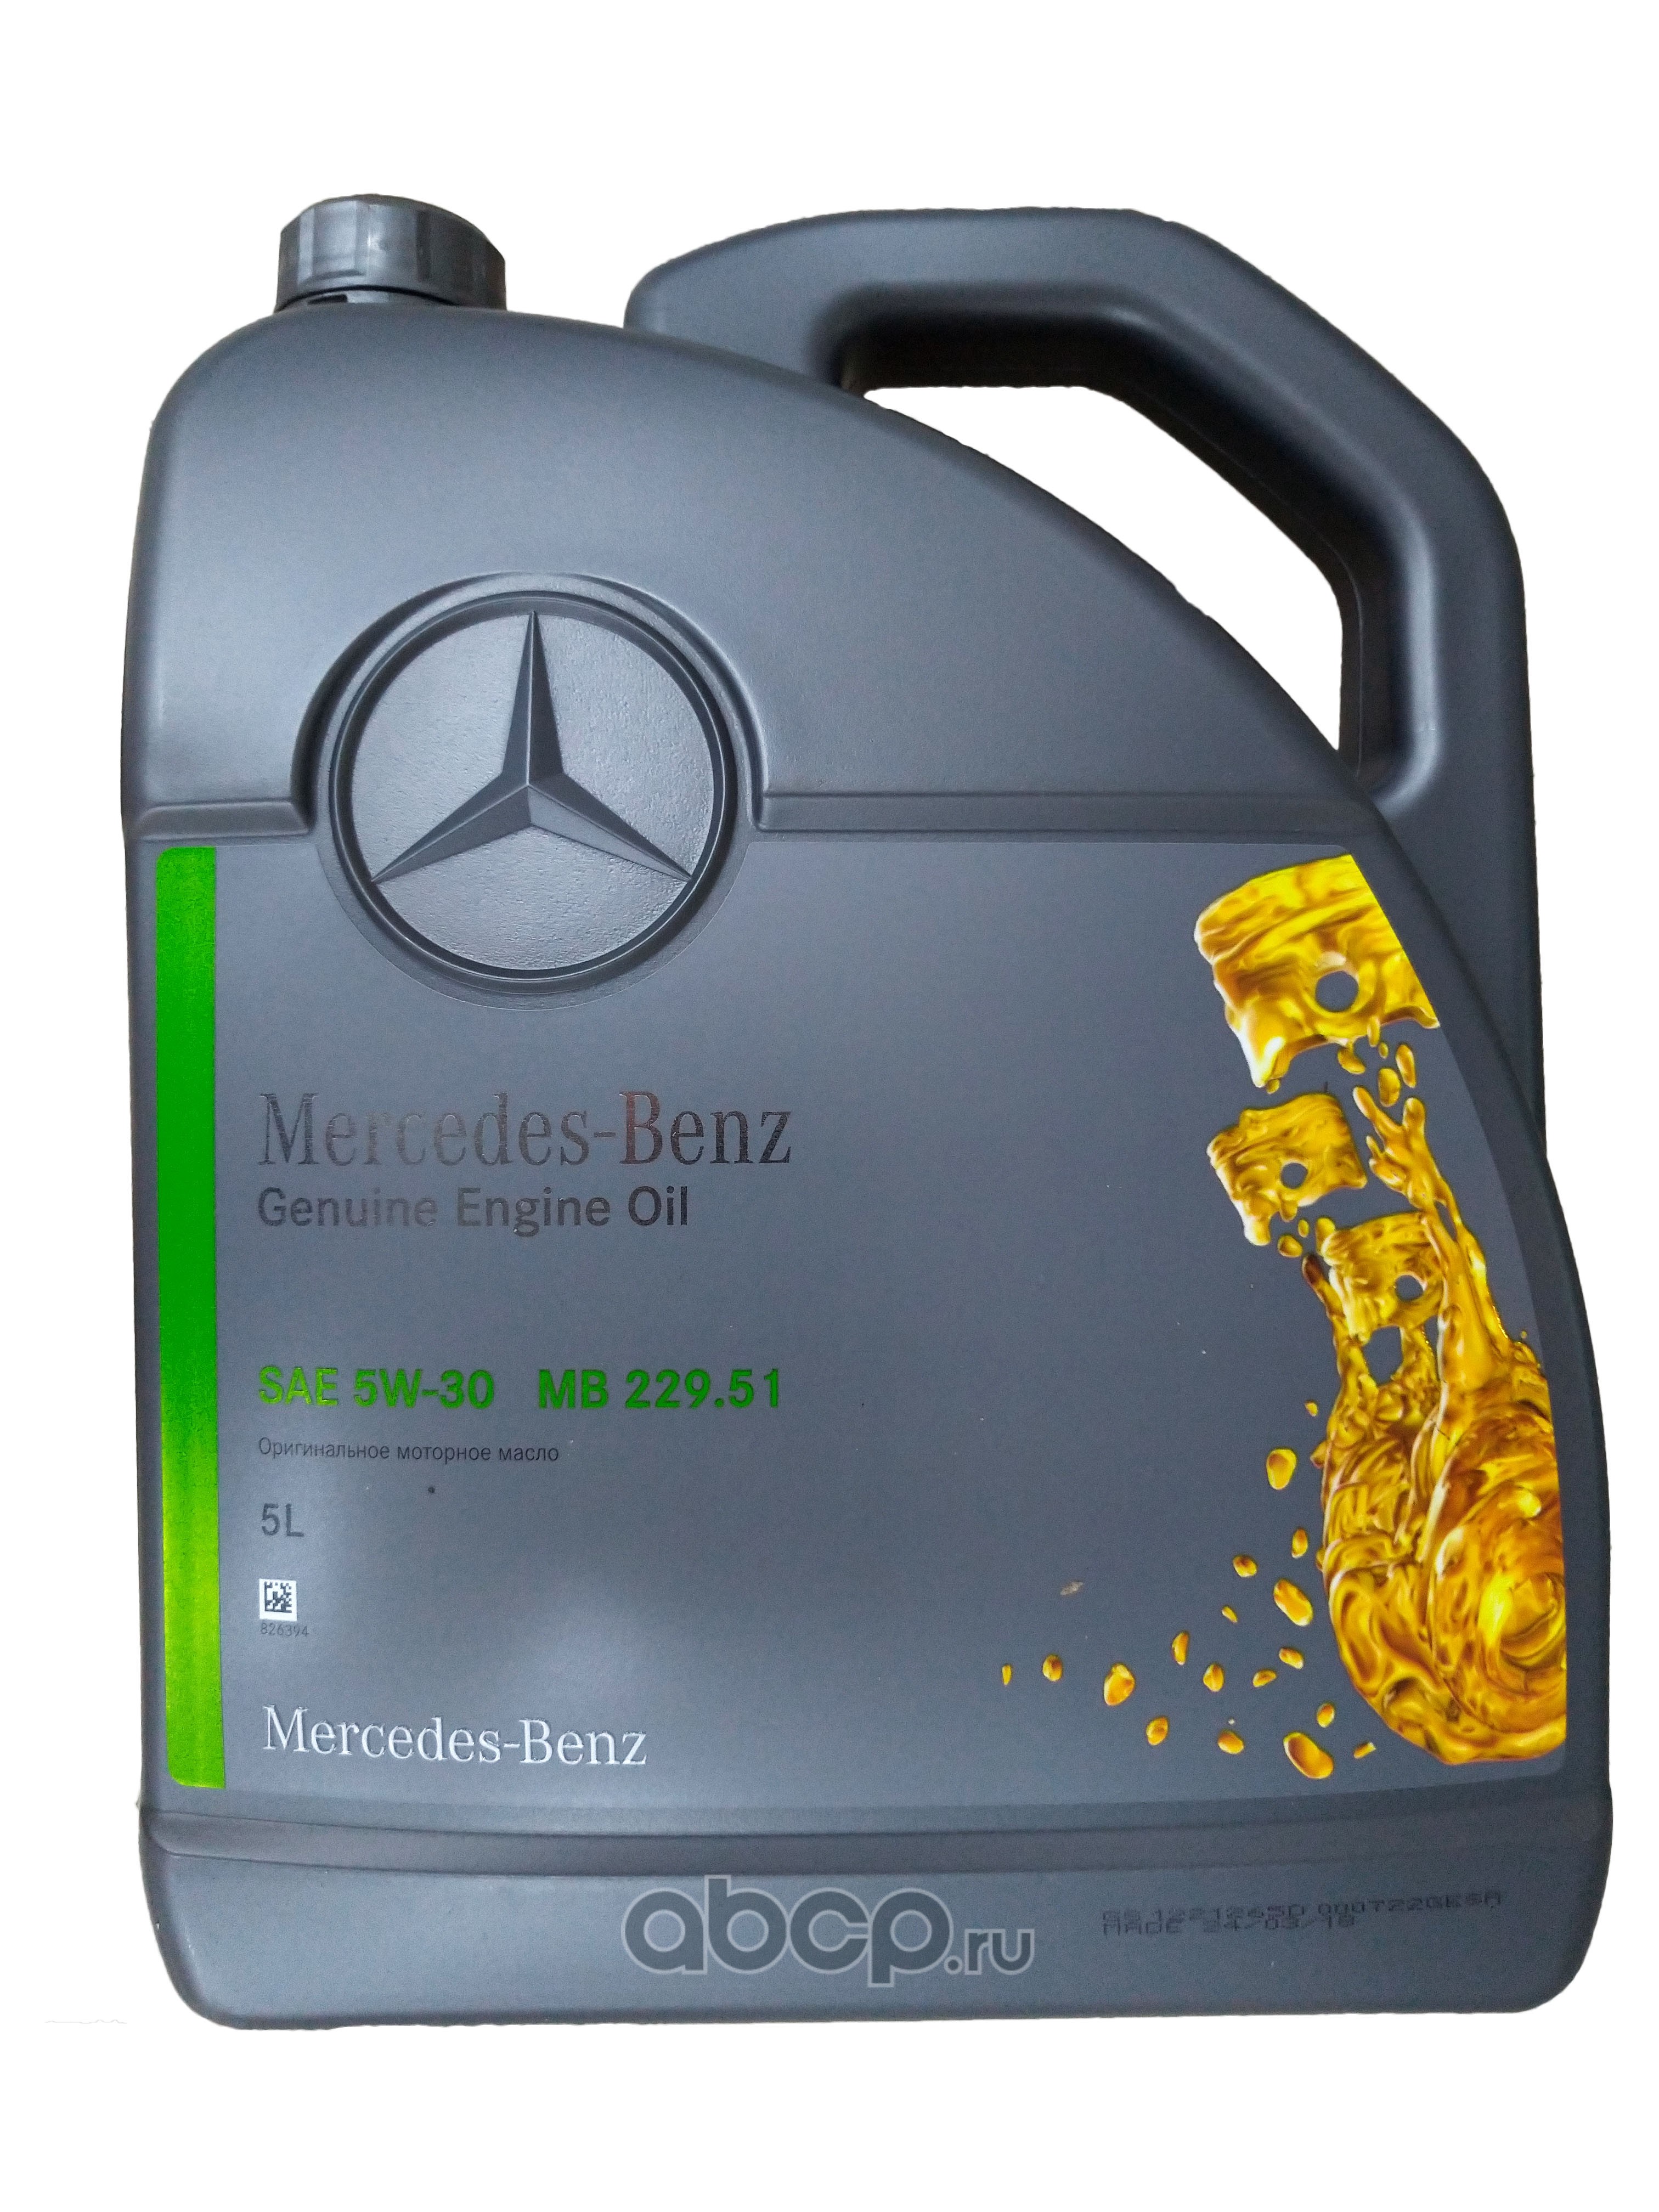 Купить масло вольт. Mercedes-Benz MB 229.51 5w30. Масло моторное Mercedes 229.51 (5w30), 5л a000989760213bler. Моторное масло Mercedes-Вenz 5w30 MB 229.51. Mercedes-Benz 5w-30 229.5.